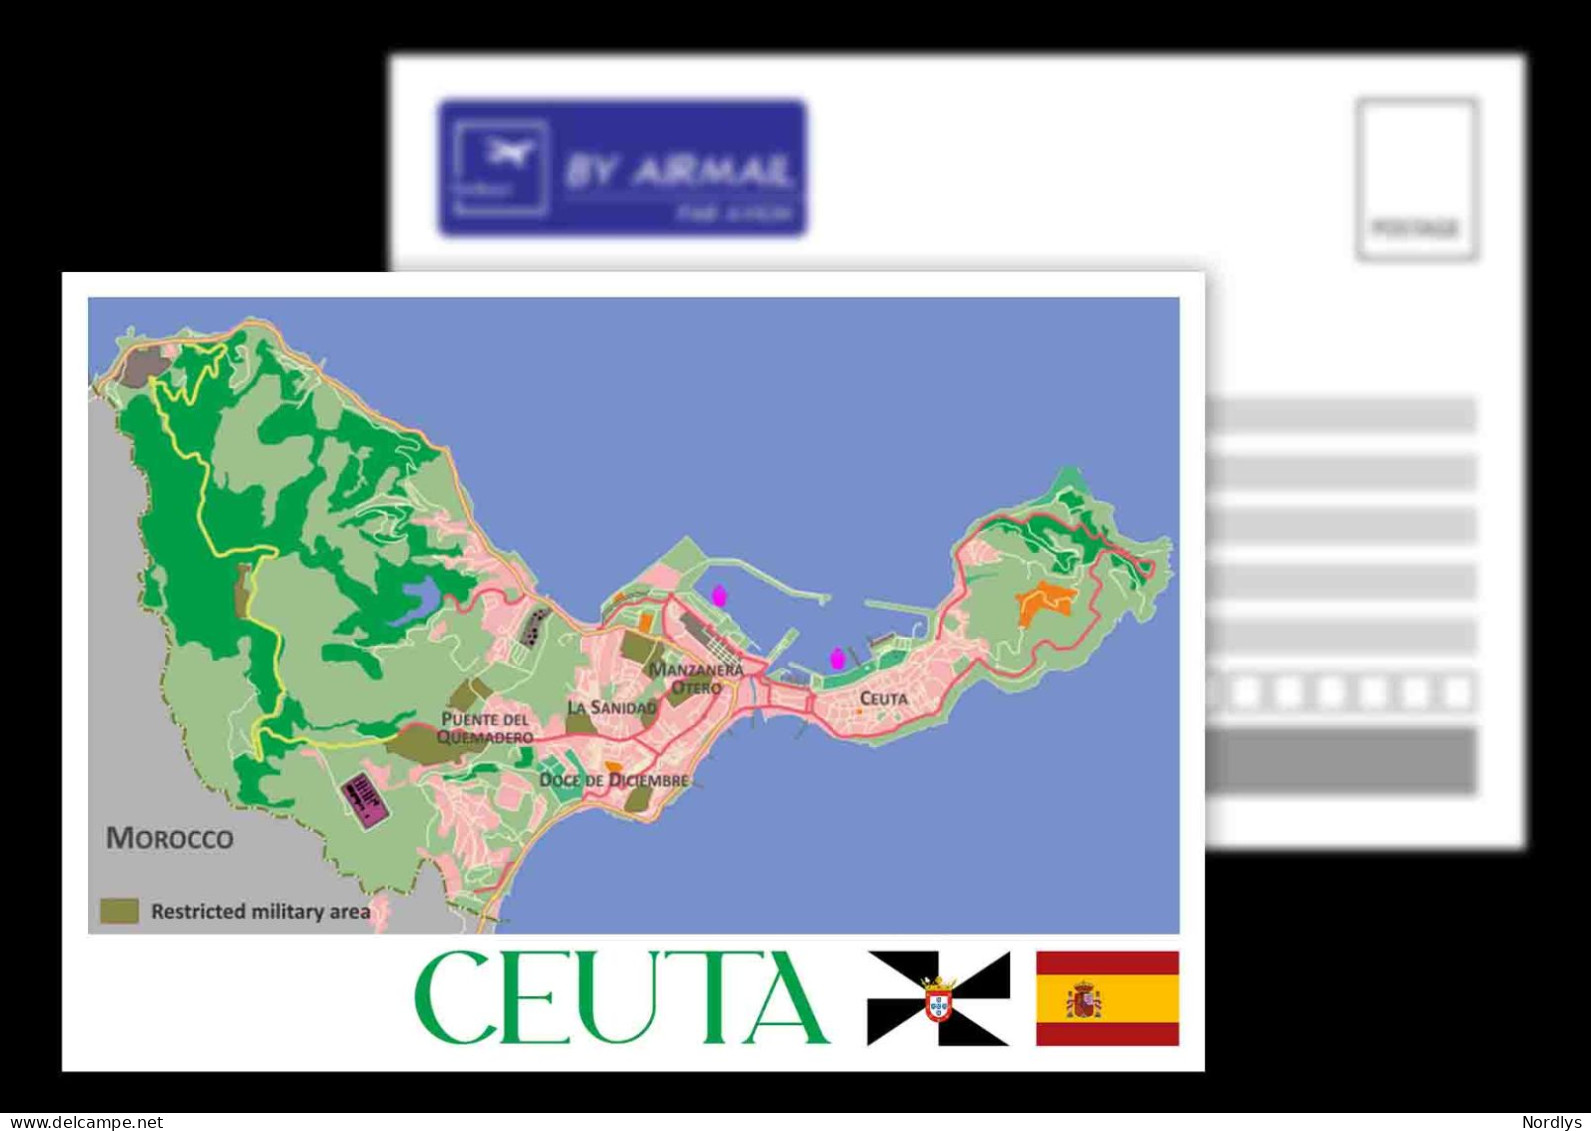 Ceuta / Spain / Postcard / View Card / Map Card - Ceuta